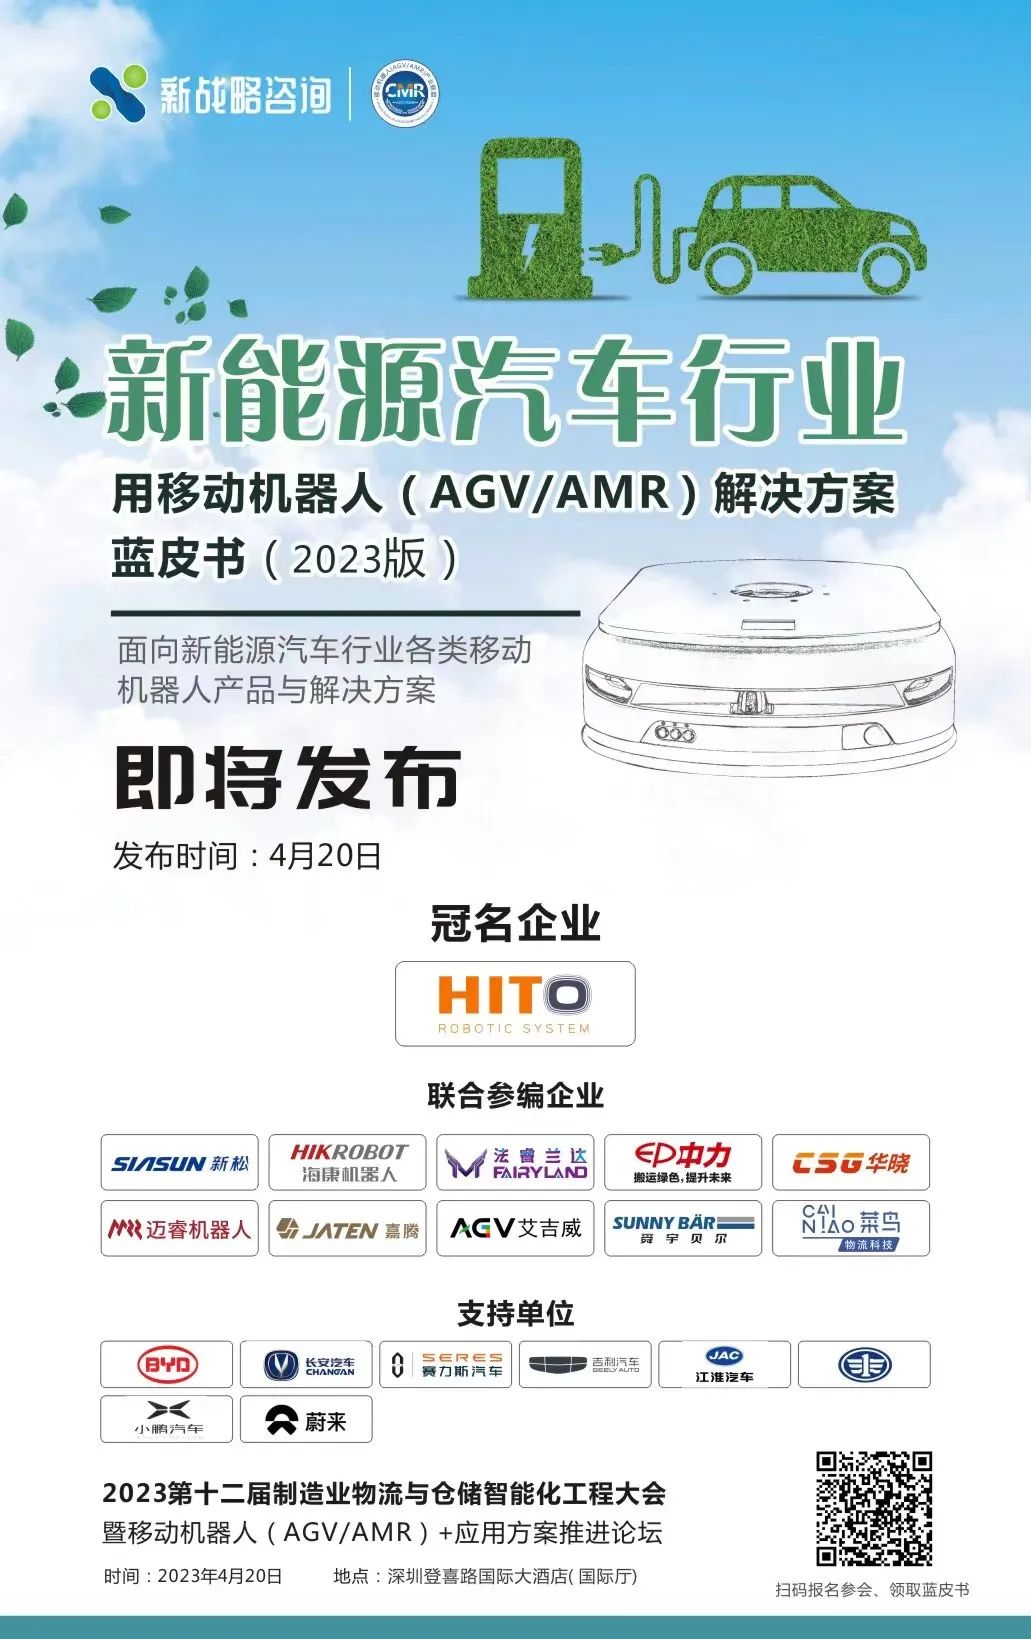 9大新能源车企内部AGV/AMR应用情况